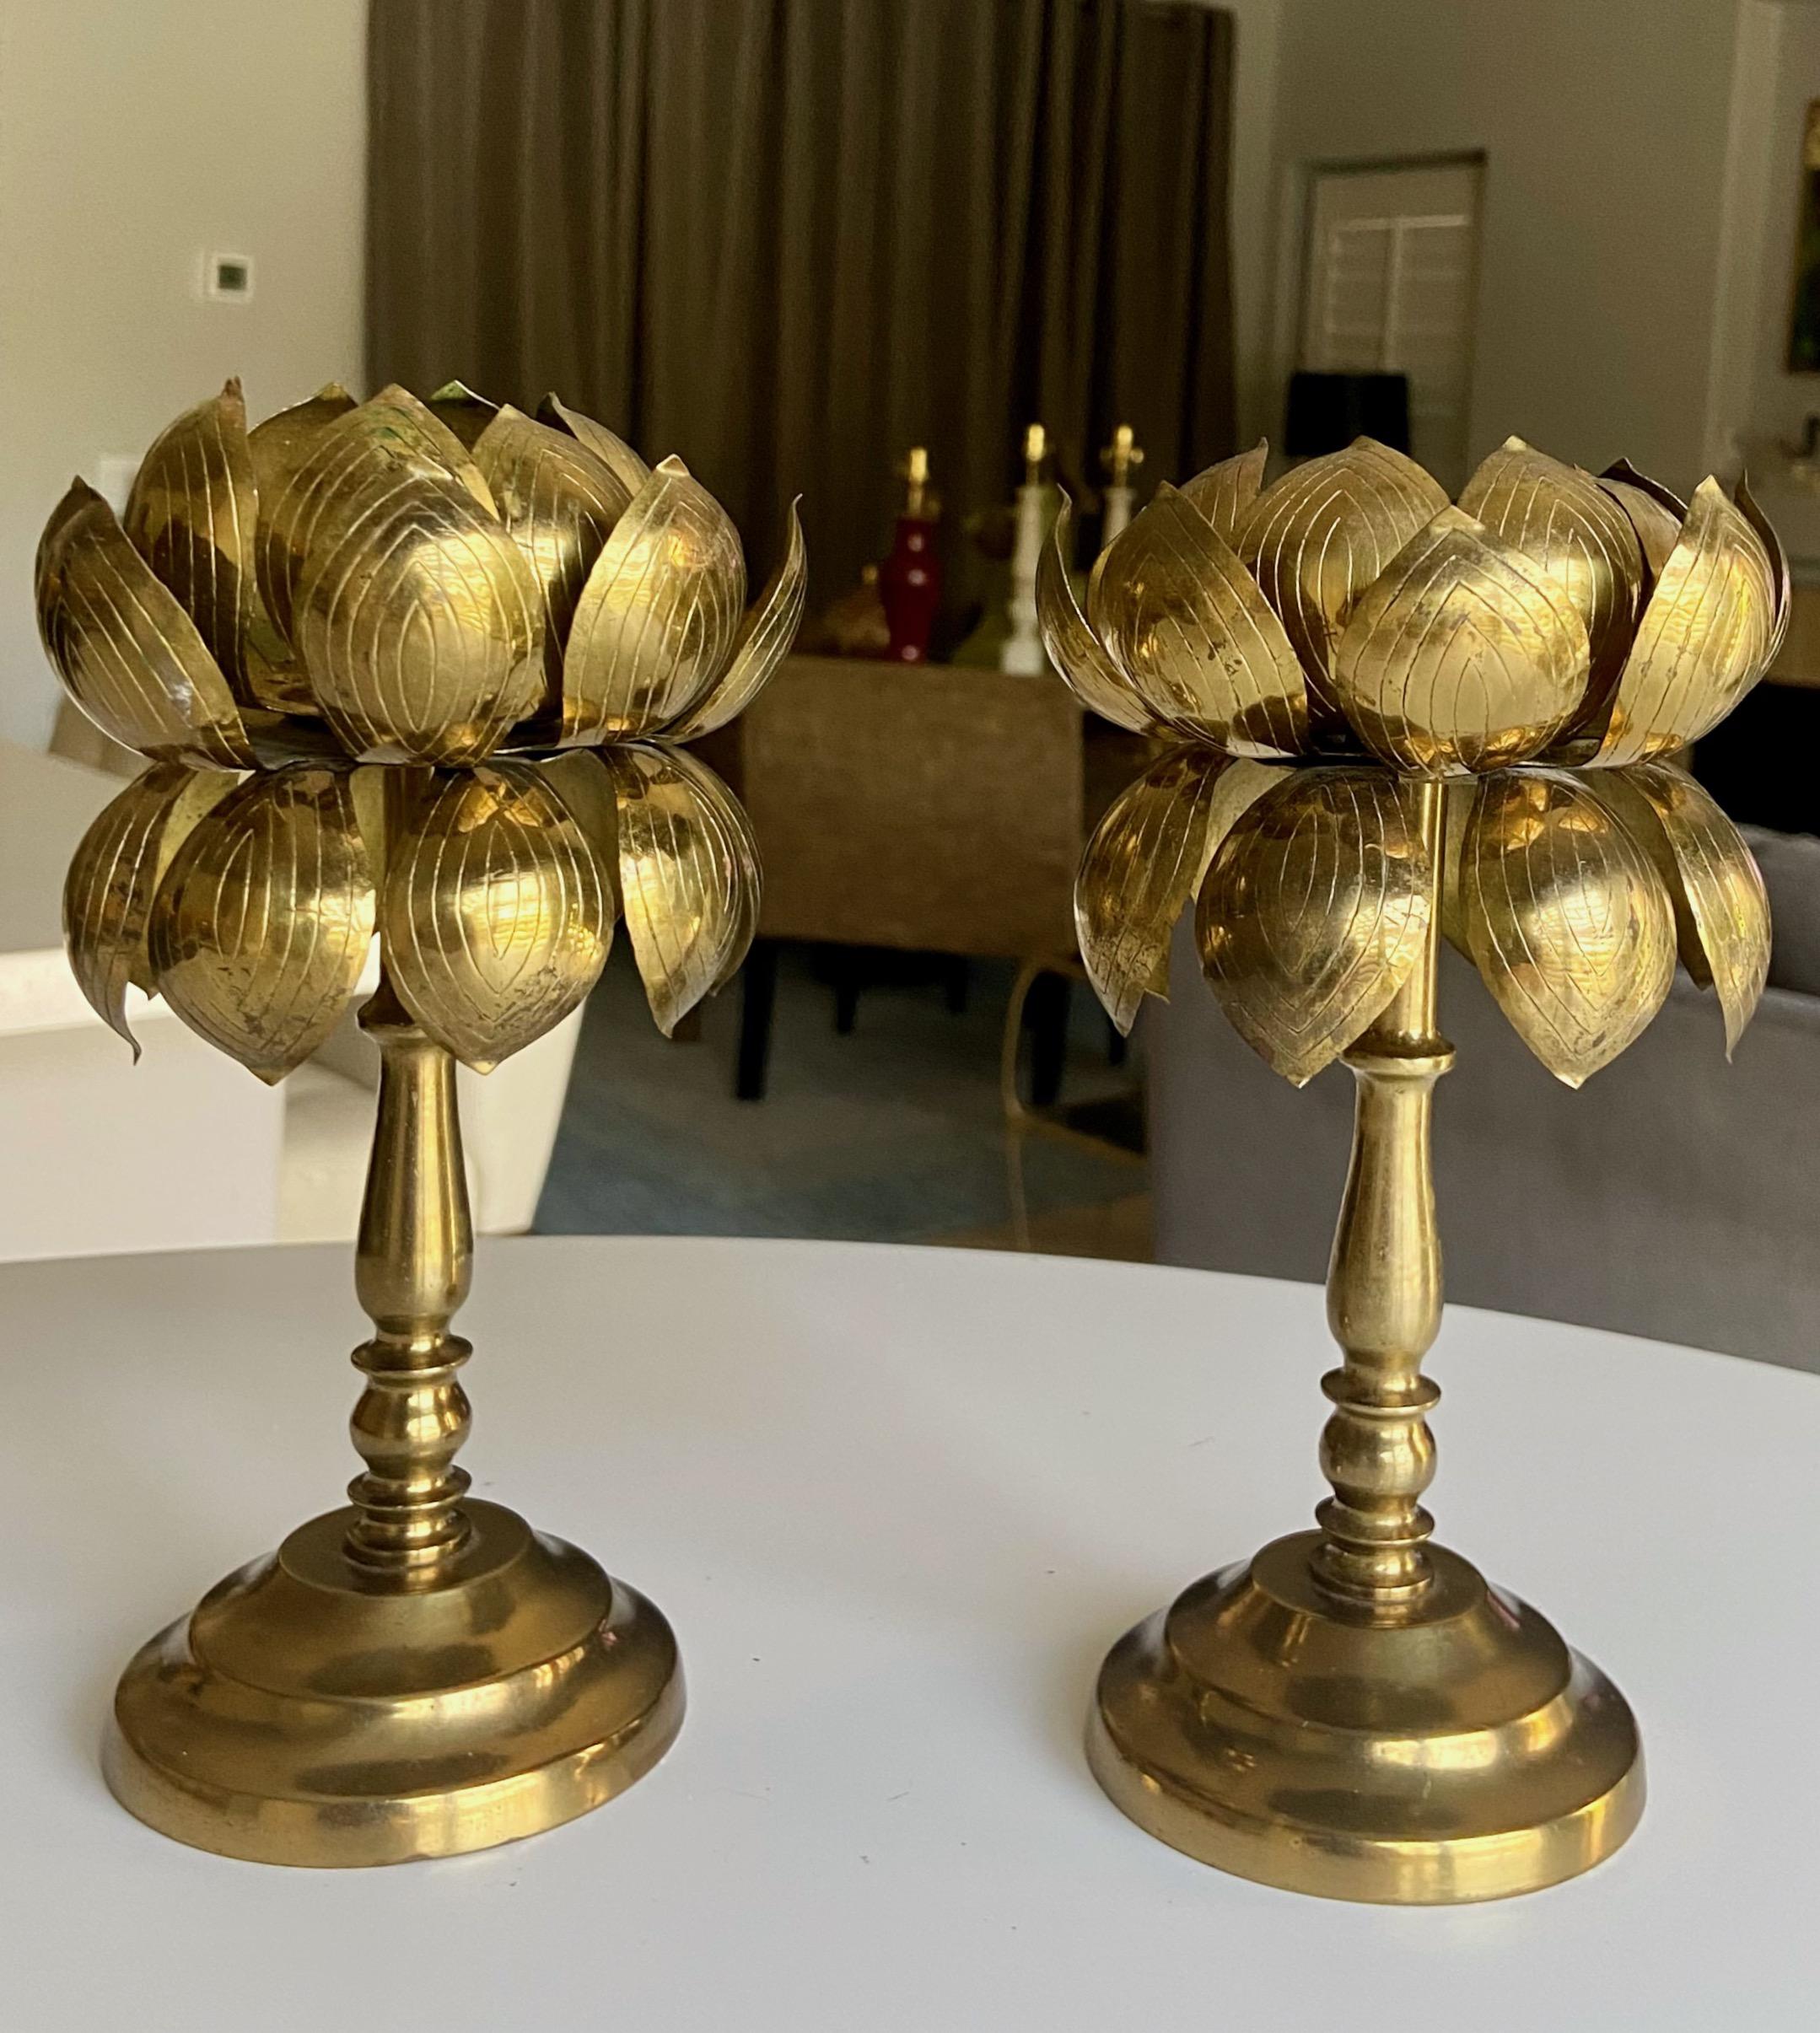 Paire de chandeliers ou bougeoirs en laiton en forme de fleur de lotus par Feldman Lighting Company. En très bon état, il a conservé sa finition d'origine en laiton doré.